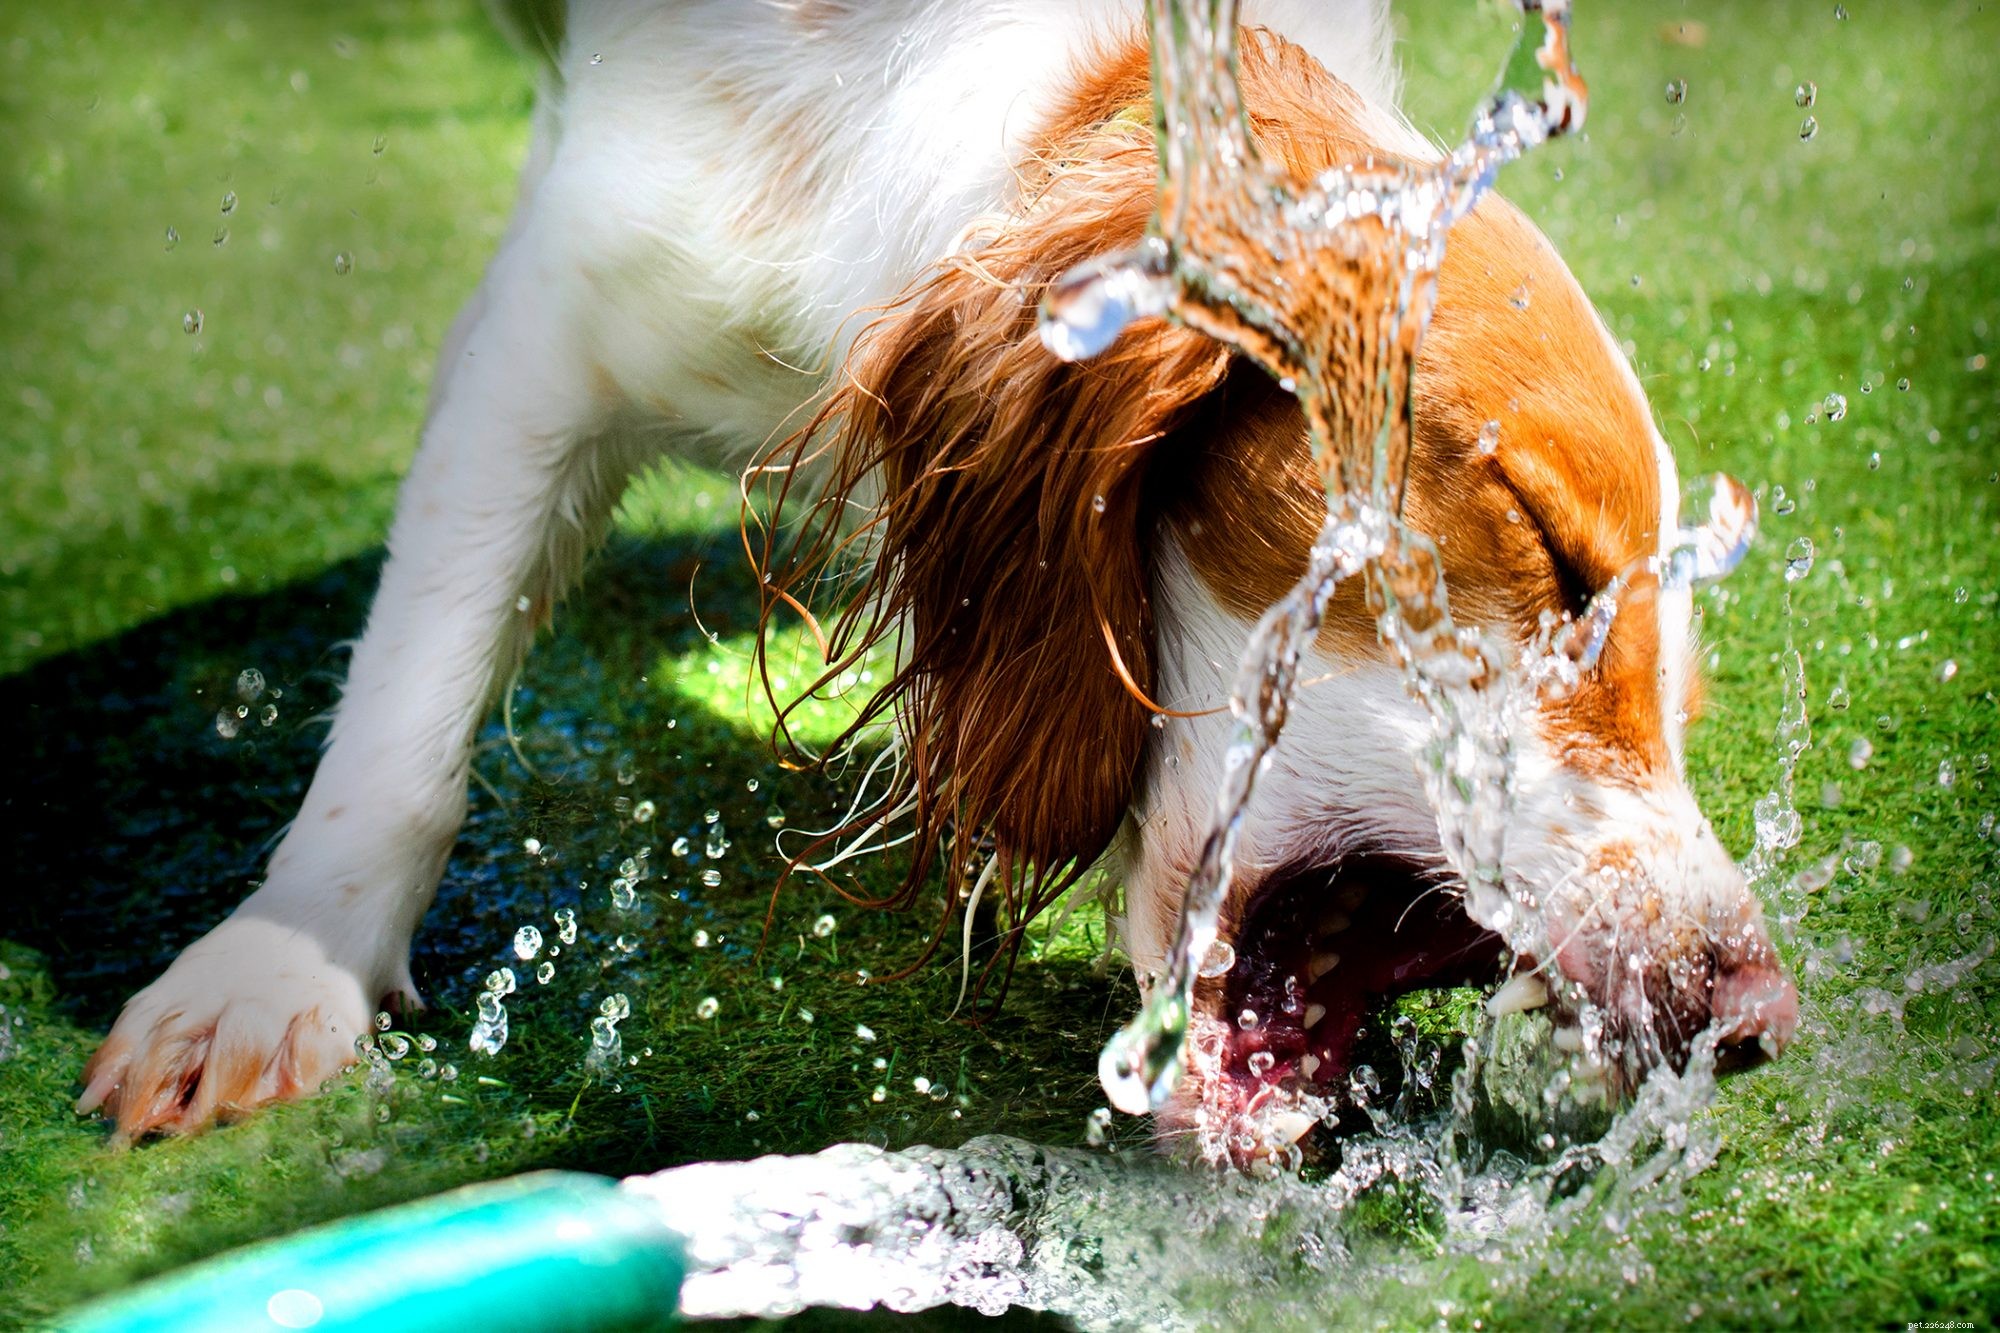 Disidratazione nei cani:cause, sintomi e come reidratare il tuo cane